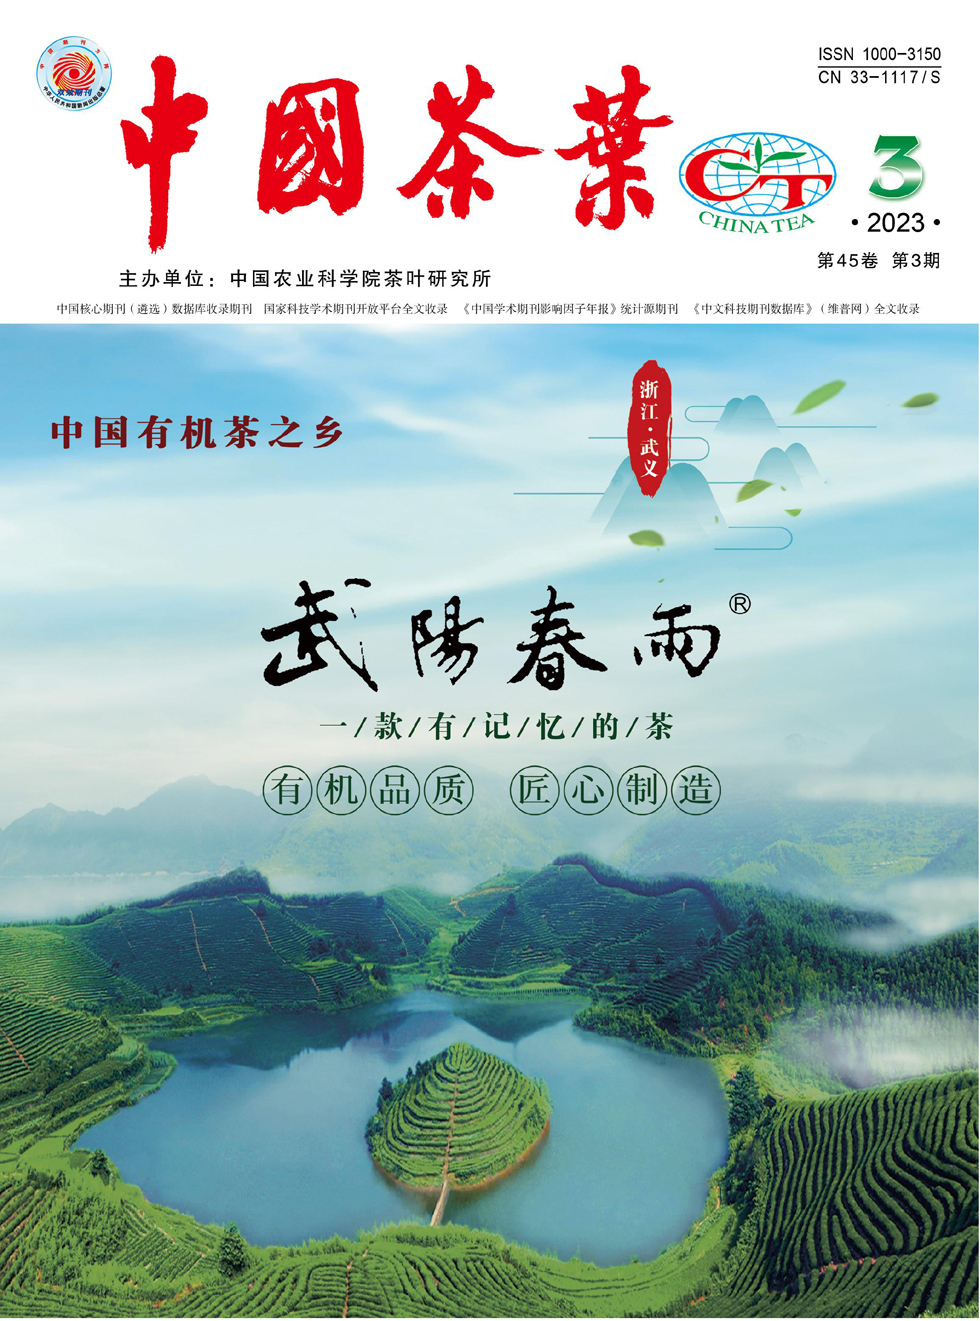 中国茶叶杂志封面